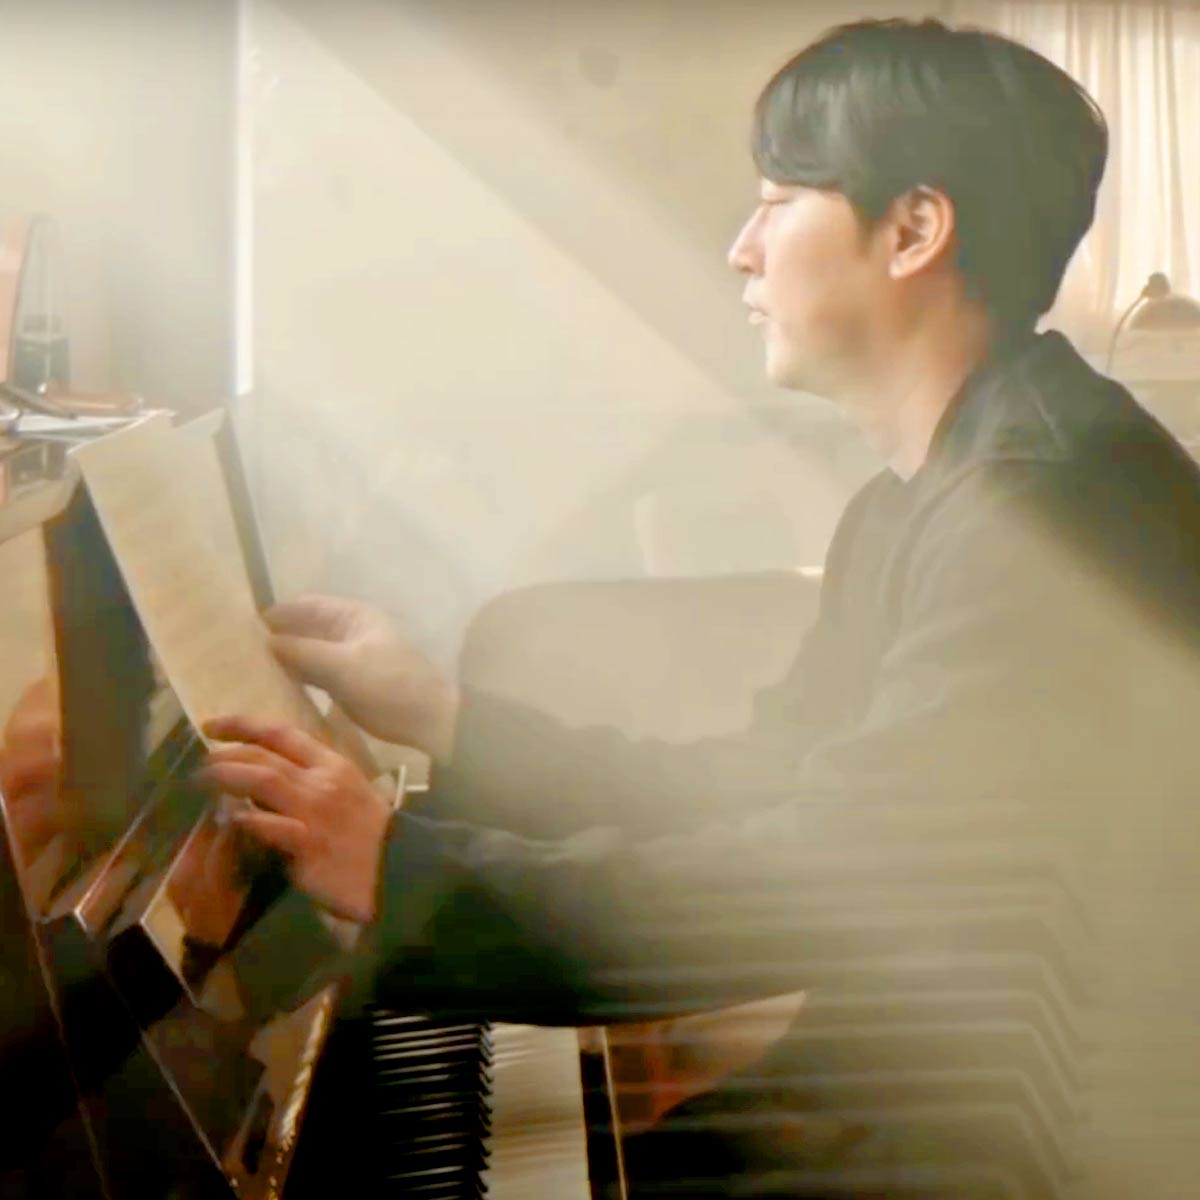 Play May Be By Yiruma Piano Music Sheet On Virtual Piano - roblox piano sheets for demons